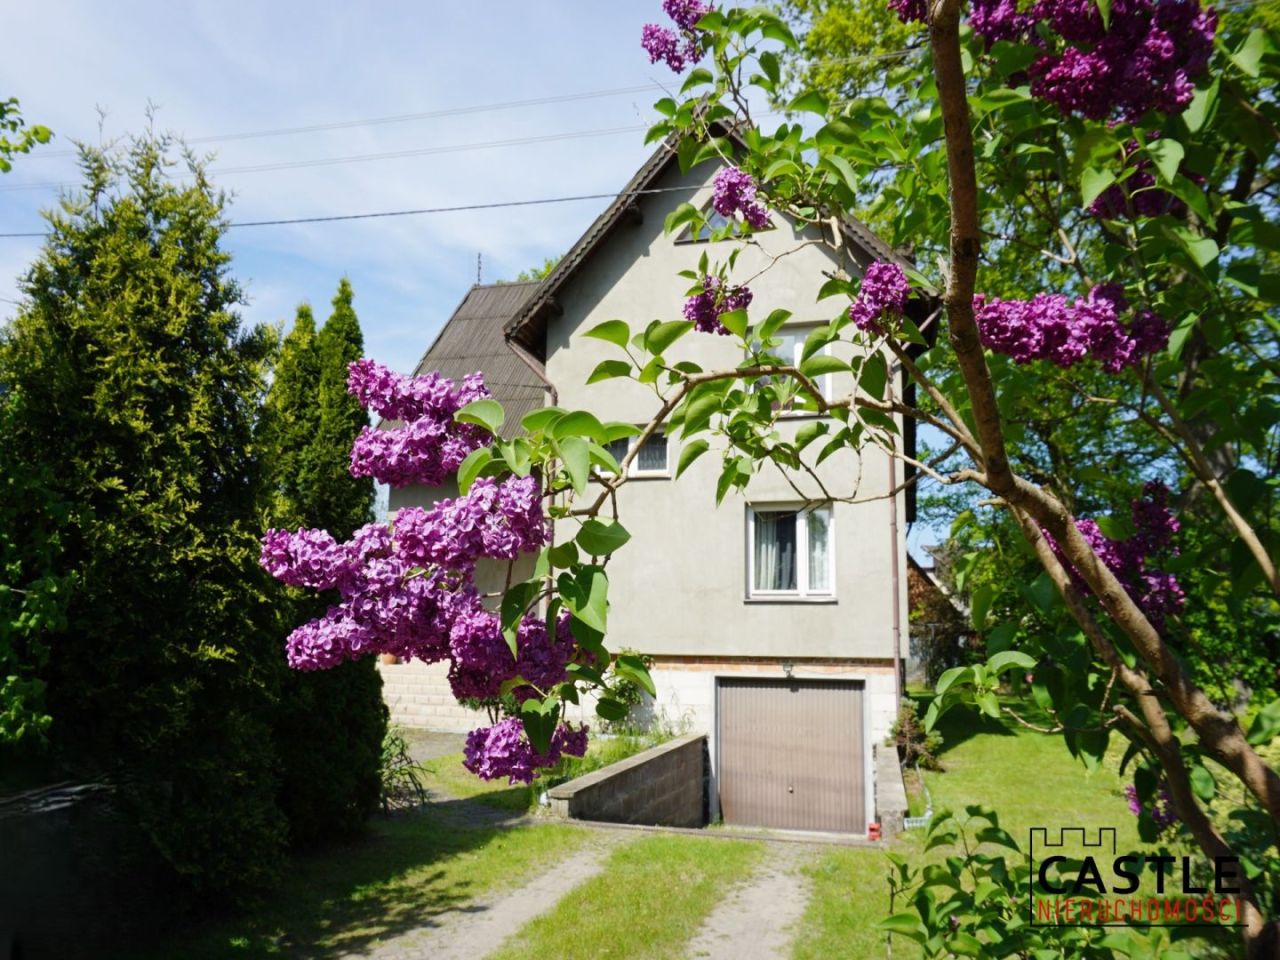 Dom pod lasem, dla rodziny, 50 minut od Gdańska: zdjęcie 93887441